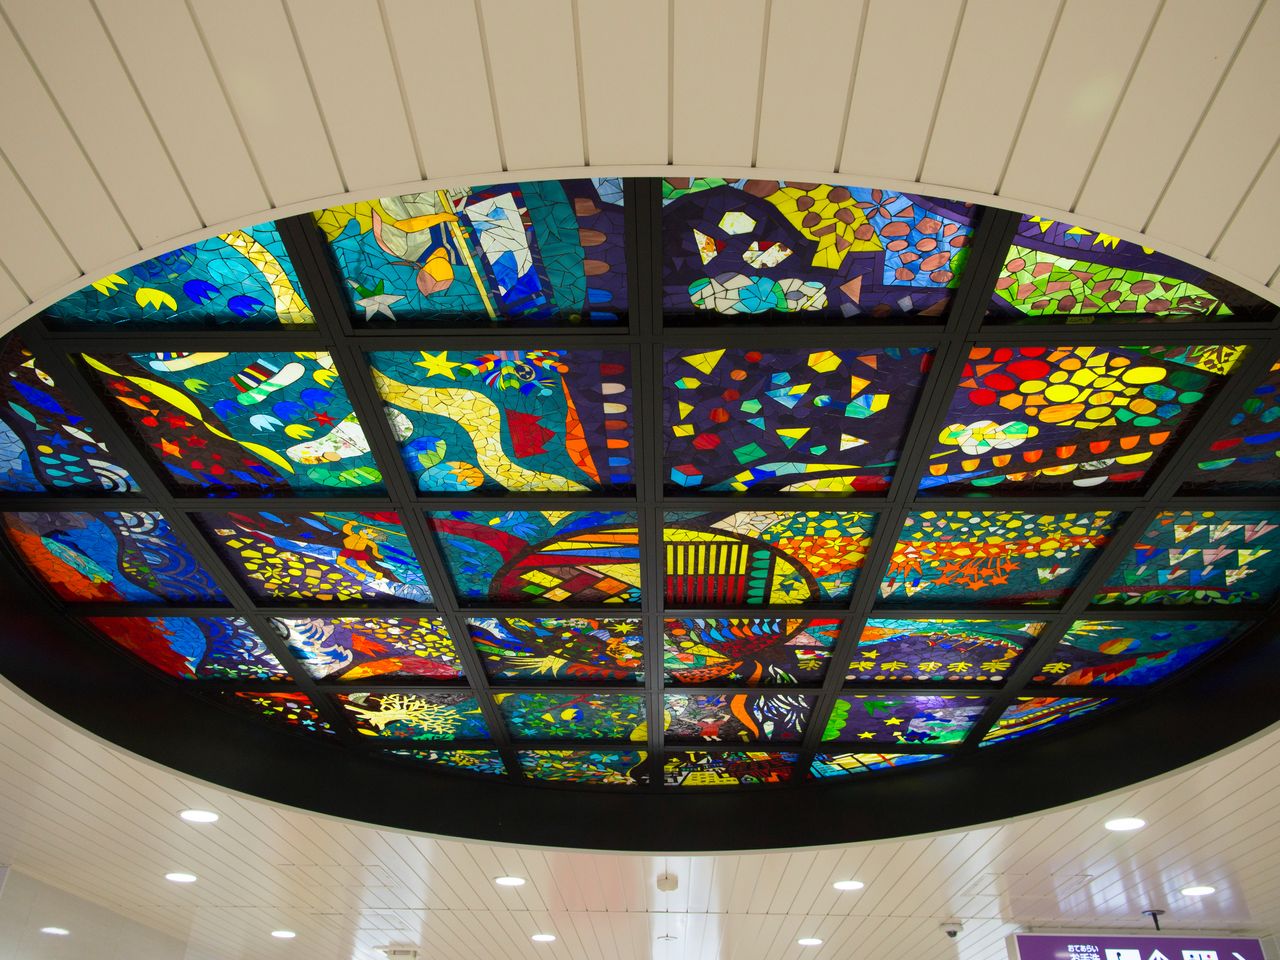 ゆいレール駅には、各駅に地域にちなんだアート作品を展示している。てだこ浦西駅にある太陽をテーマにしたアートガラス